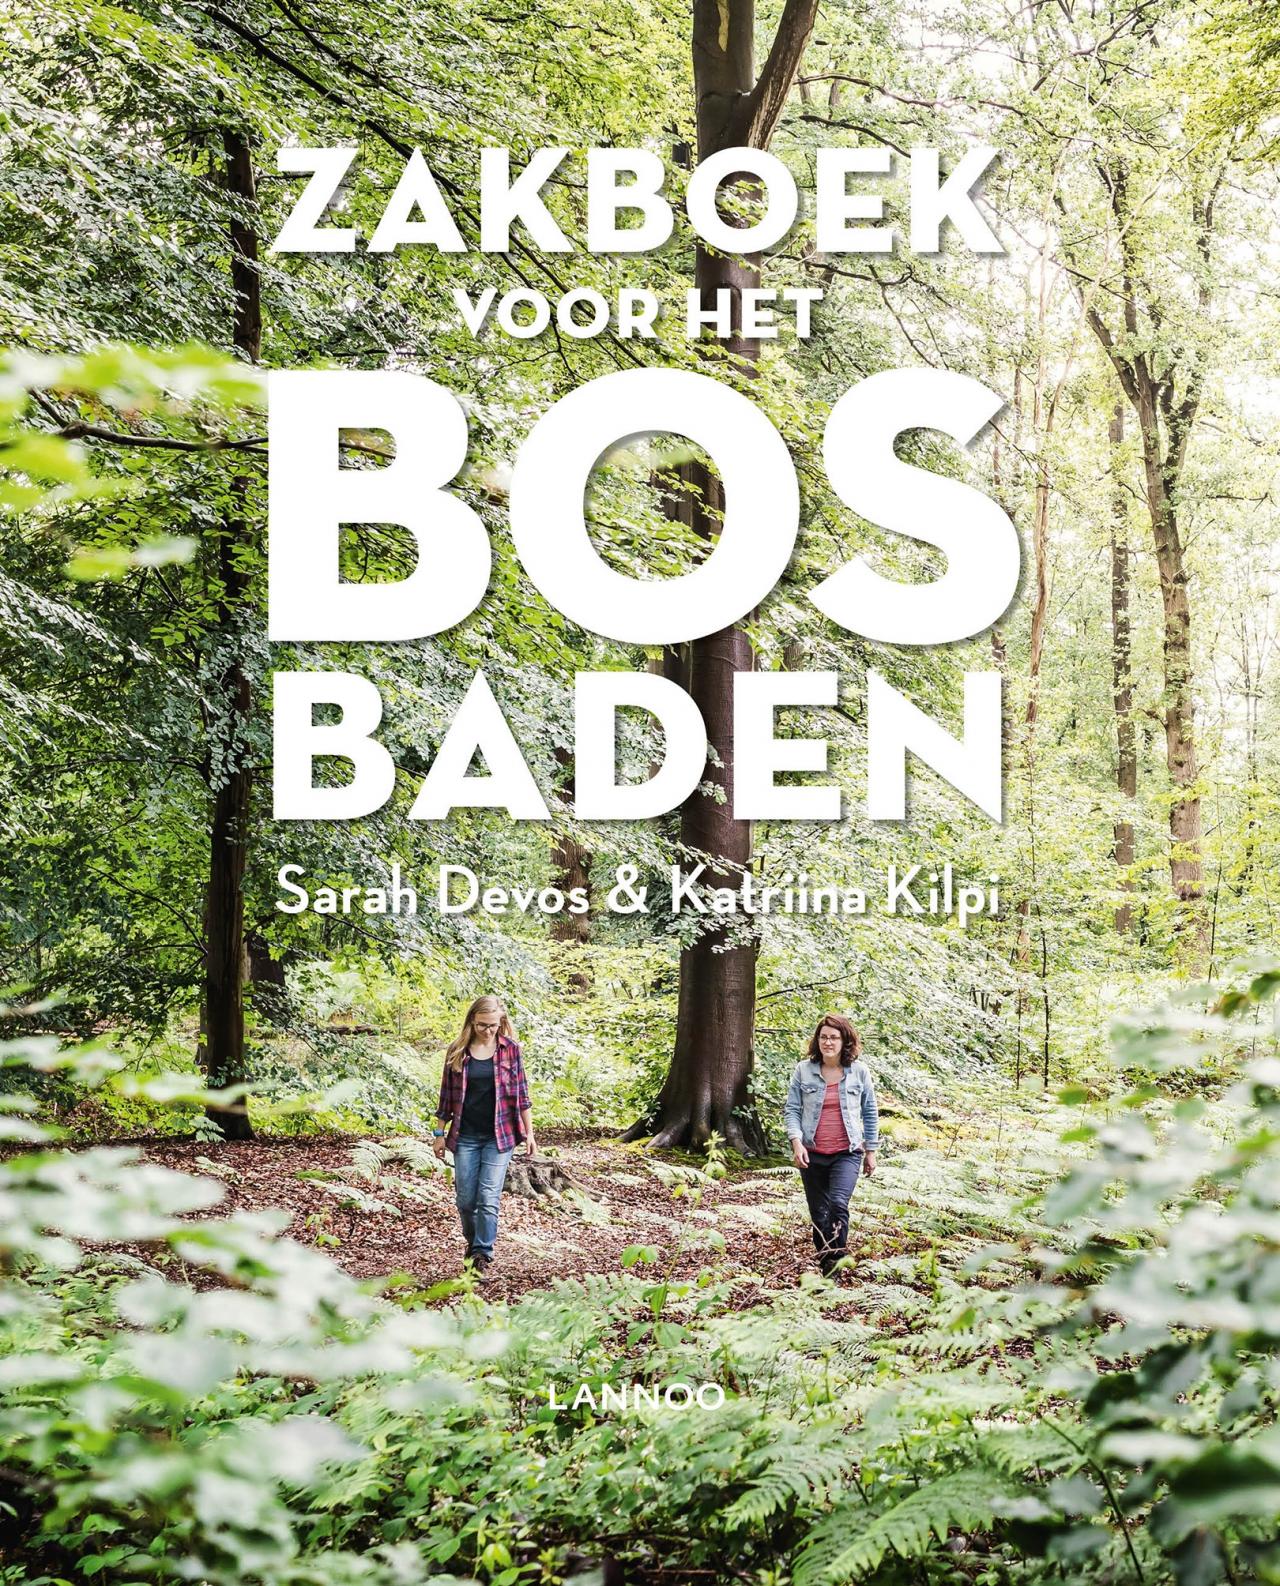 Sarah Devos en Katriina Kilpi, Zakboek voor het bosbaden - € 22,99 - uitgeverij Lannoo.